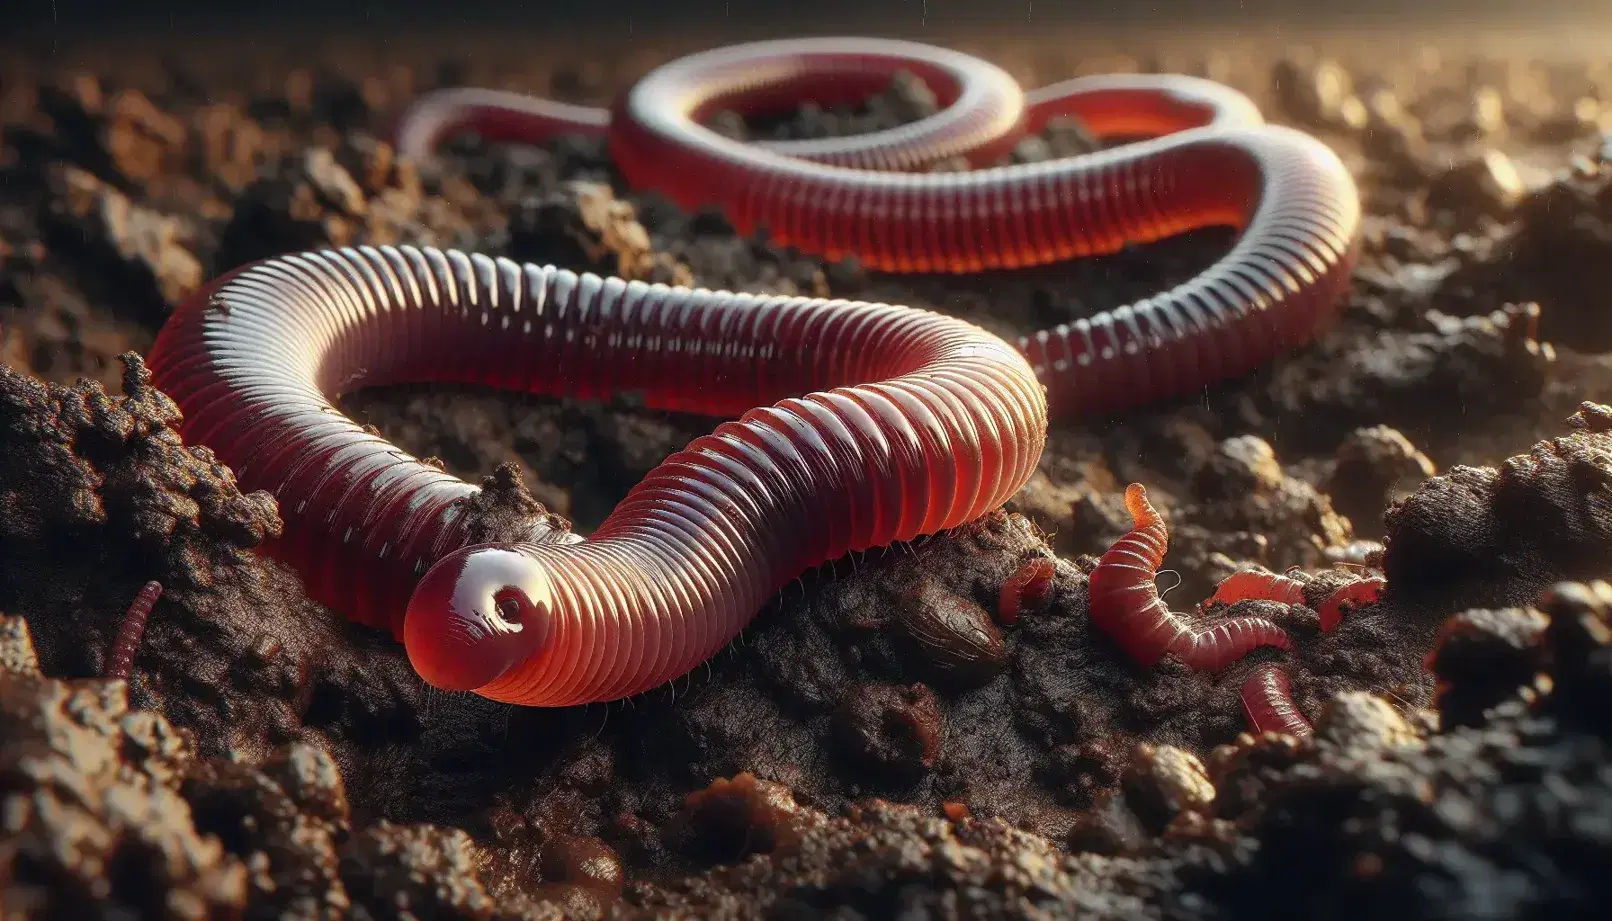 Lombrico rosso-marrone lucido con corpo segmentato in primo piano su terreno umido e organico, parzialmente immerso nel suolo.